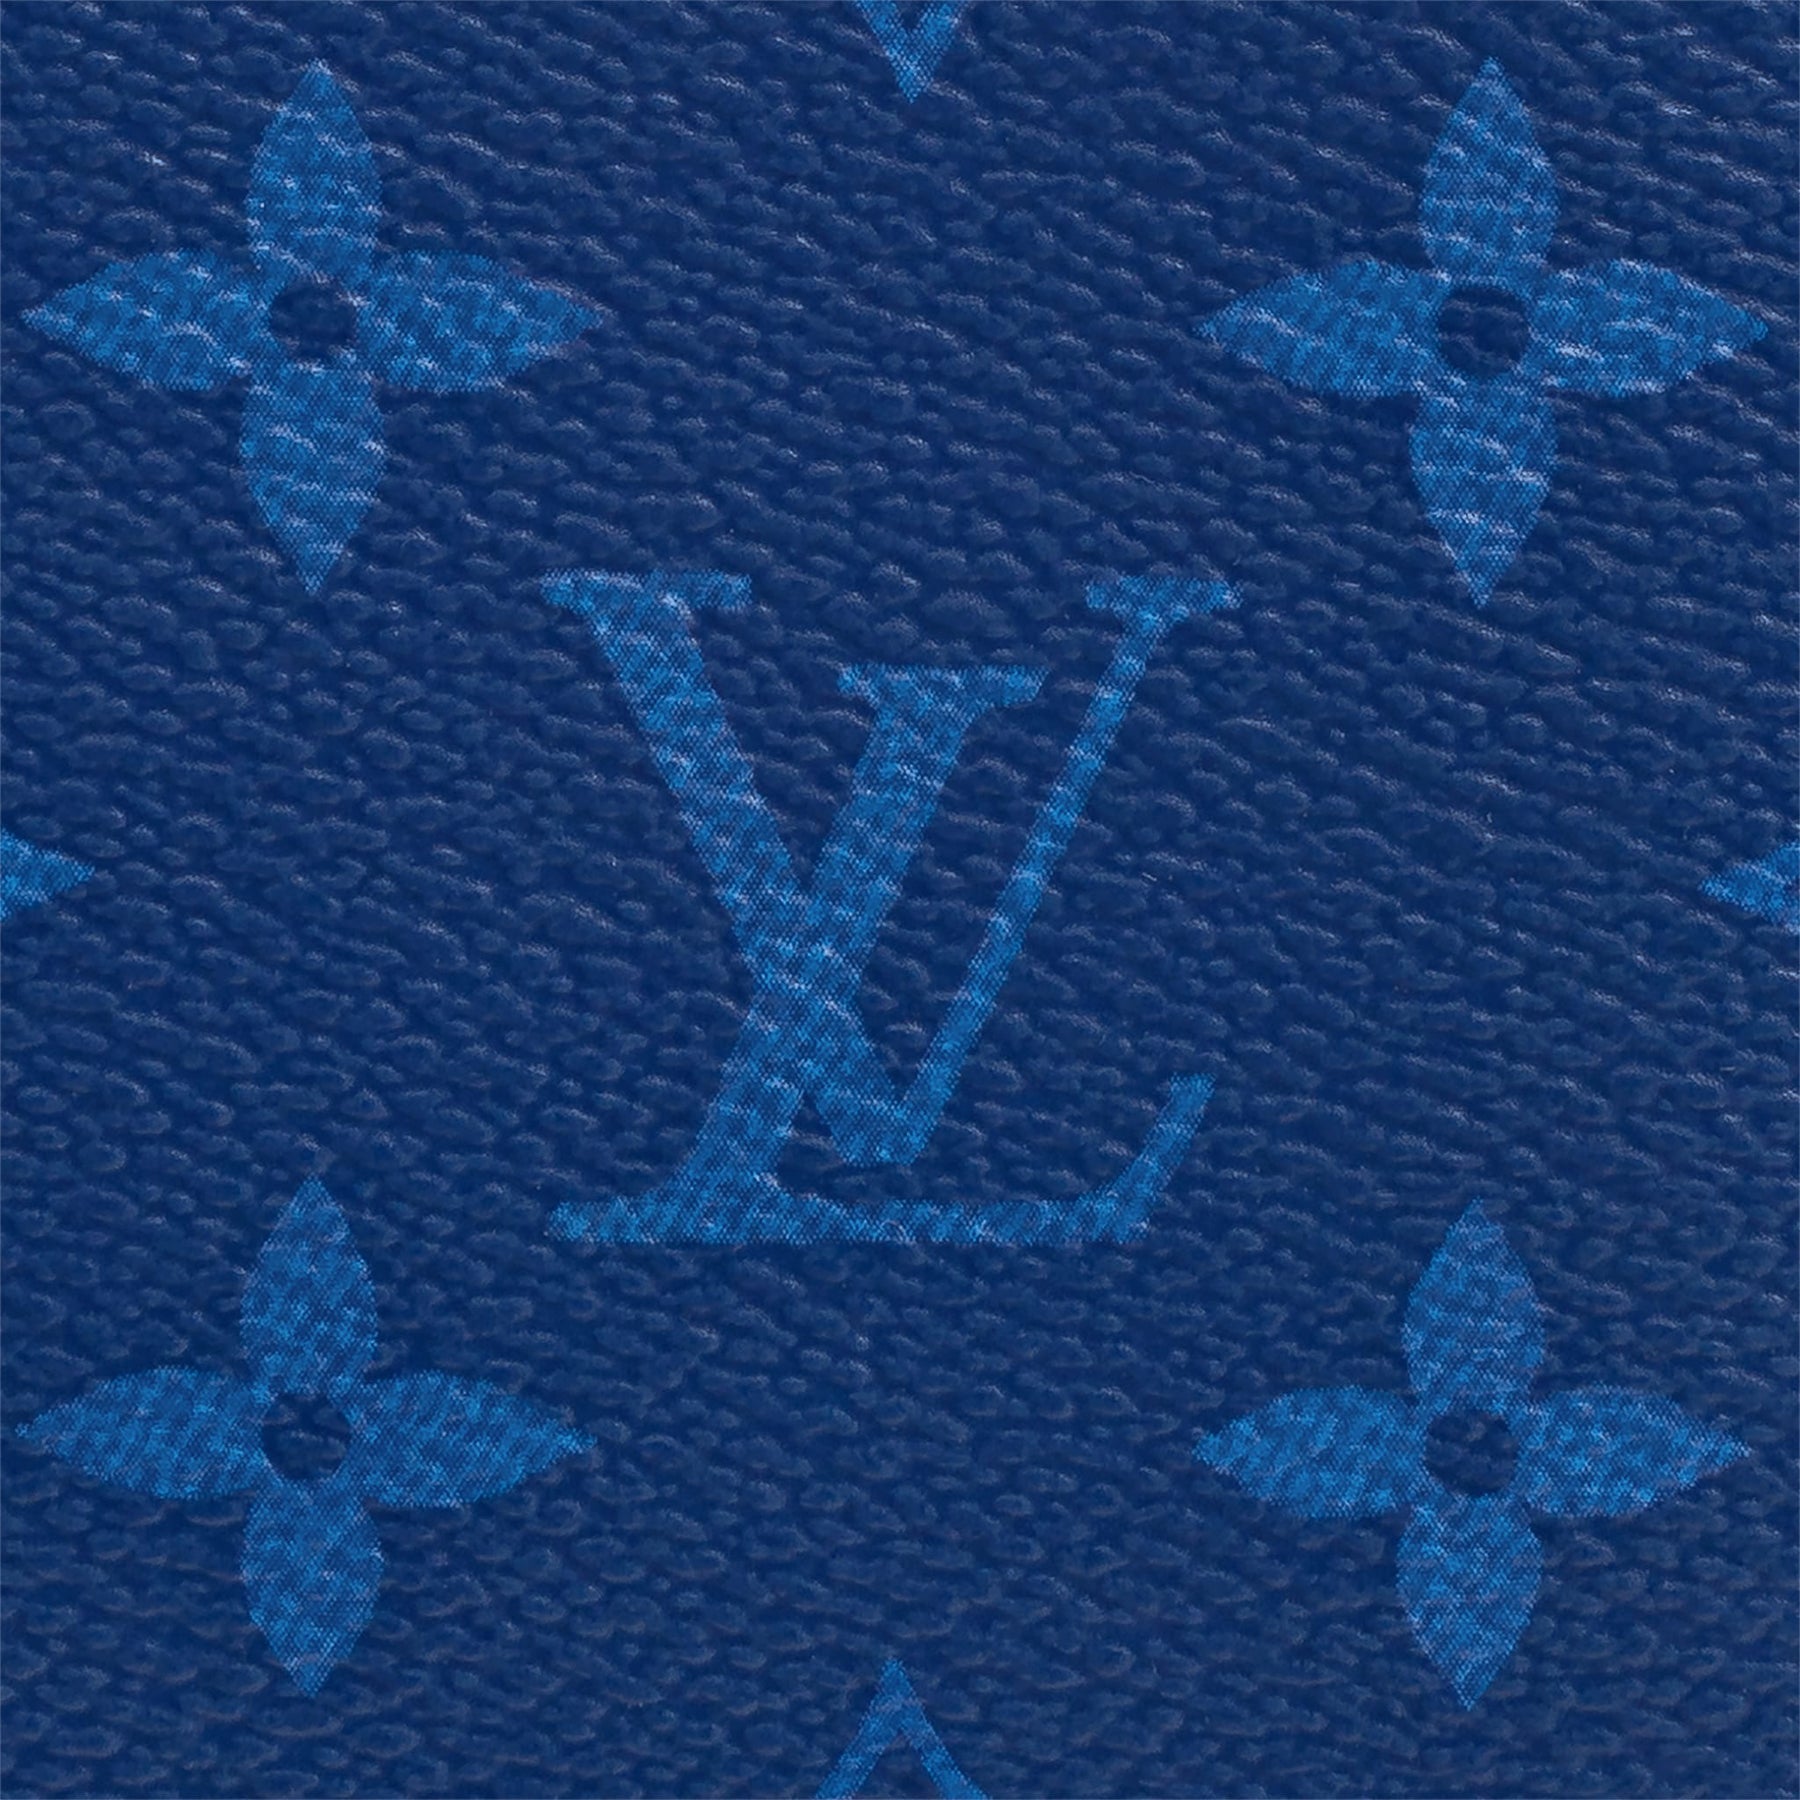 LOUIS VUITTON MULTIPLE WALLET WATERCOLOR BLUE – Caroline's Fashion Luxuries